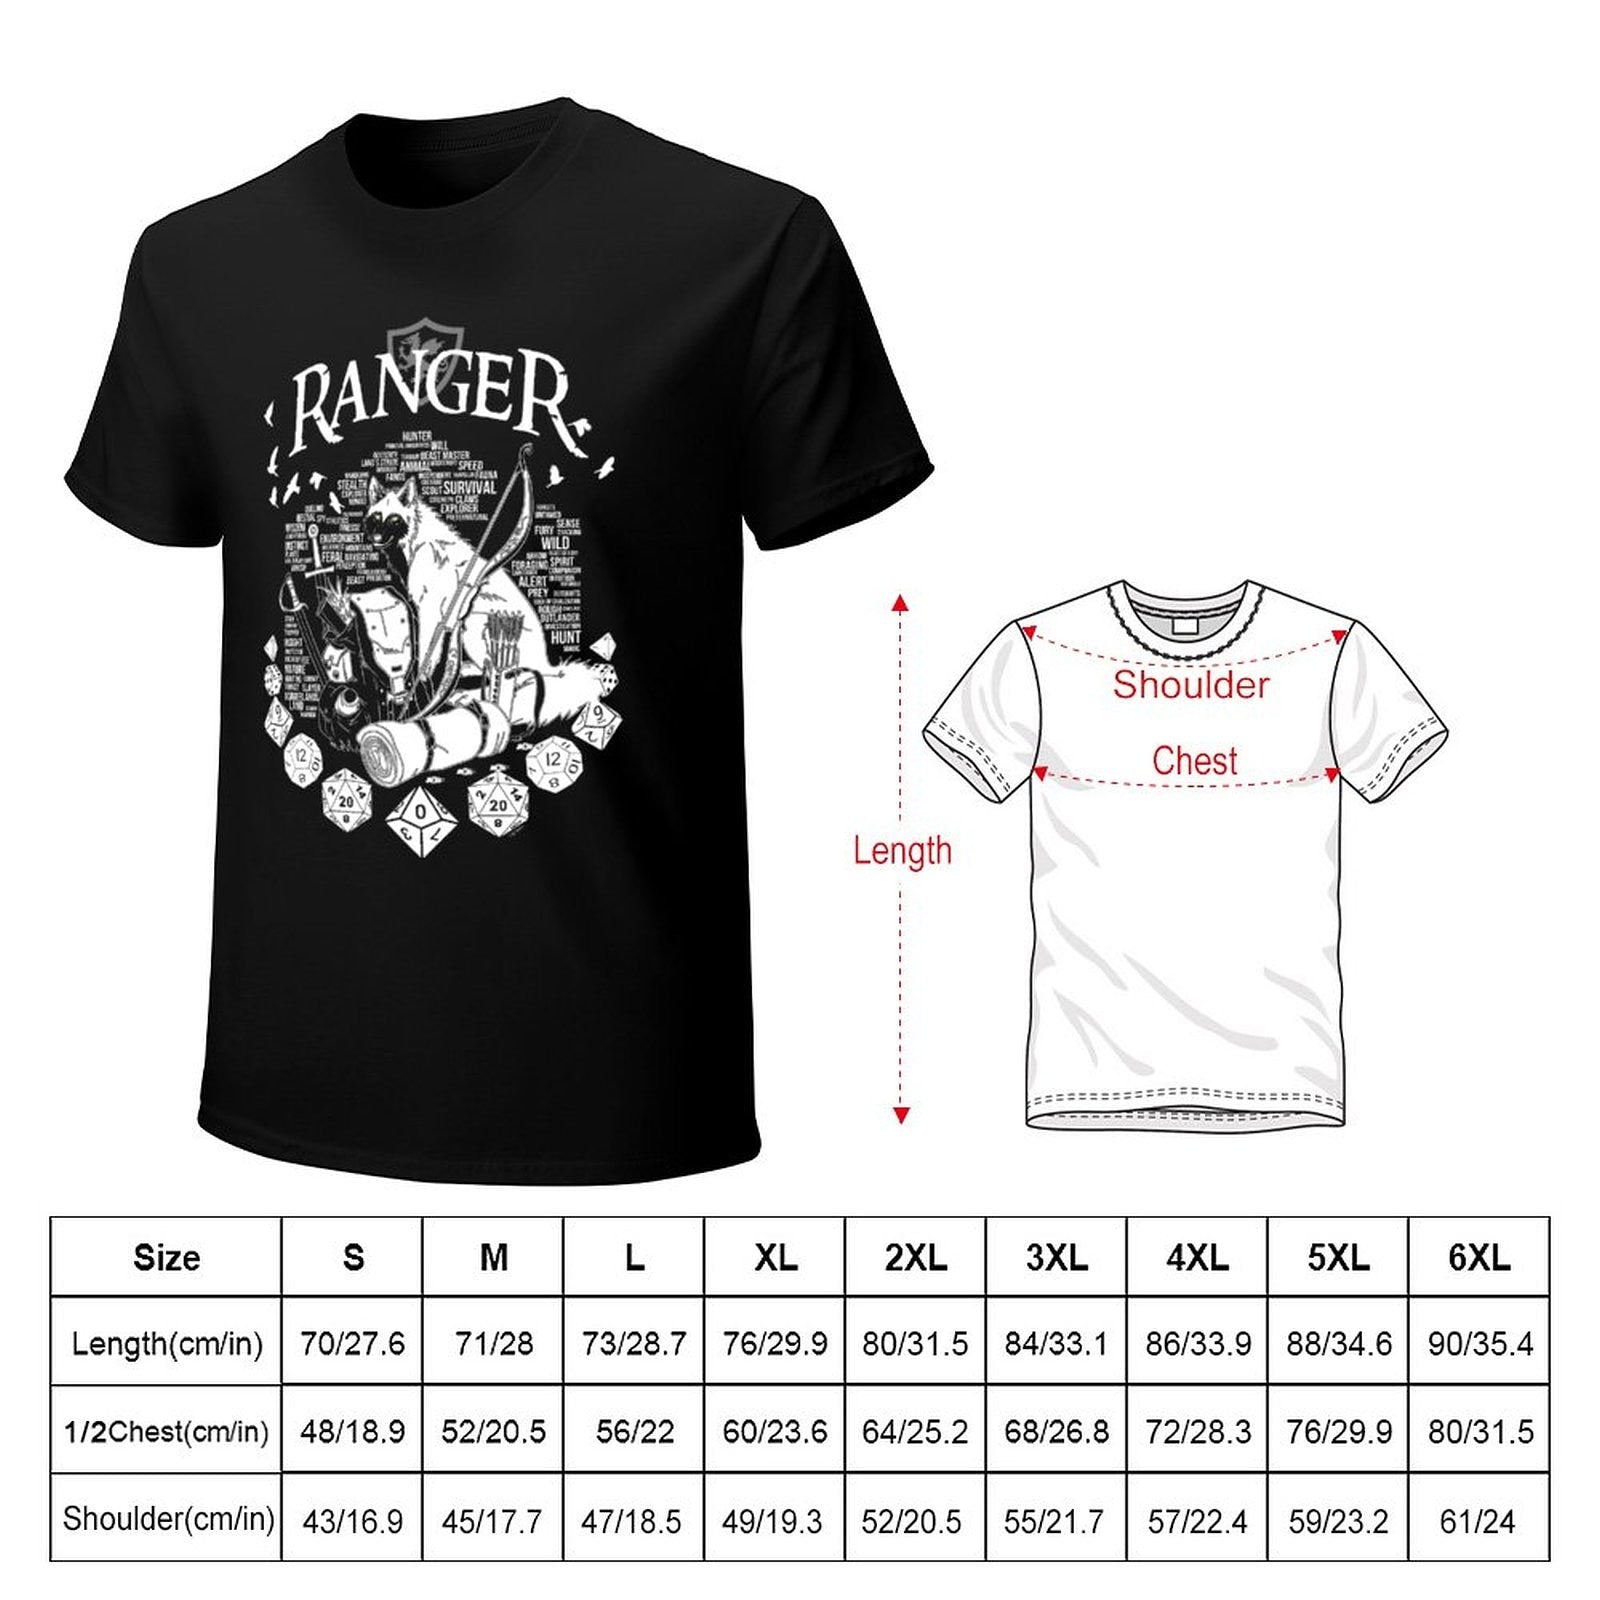 Ranger Class Cotton T-Shirt